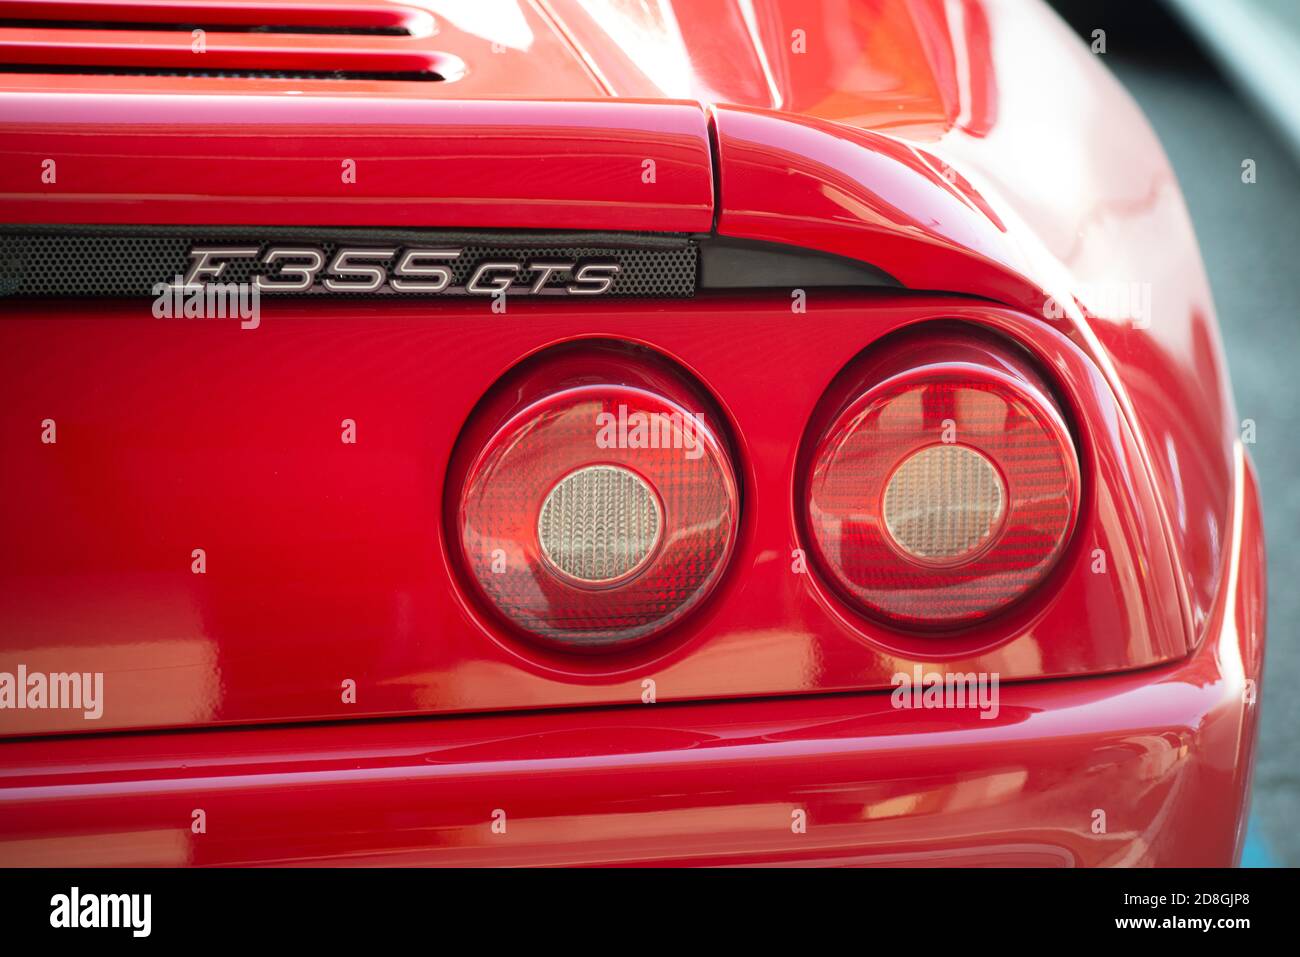 Cars, Ferrari F355 GTS, Rear Headlights Stock Photo